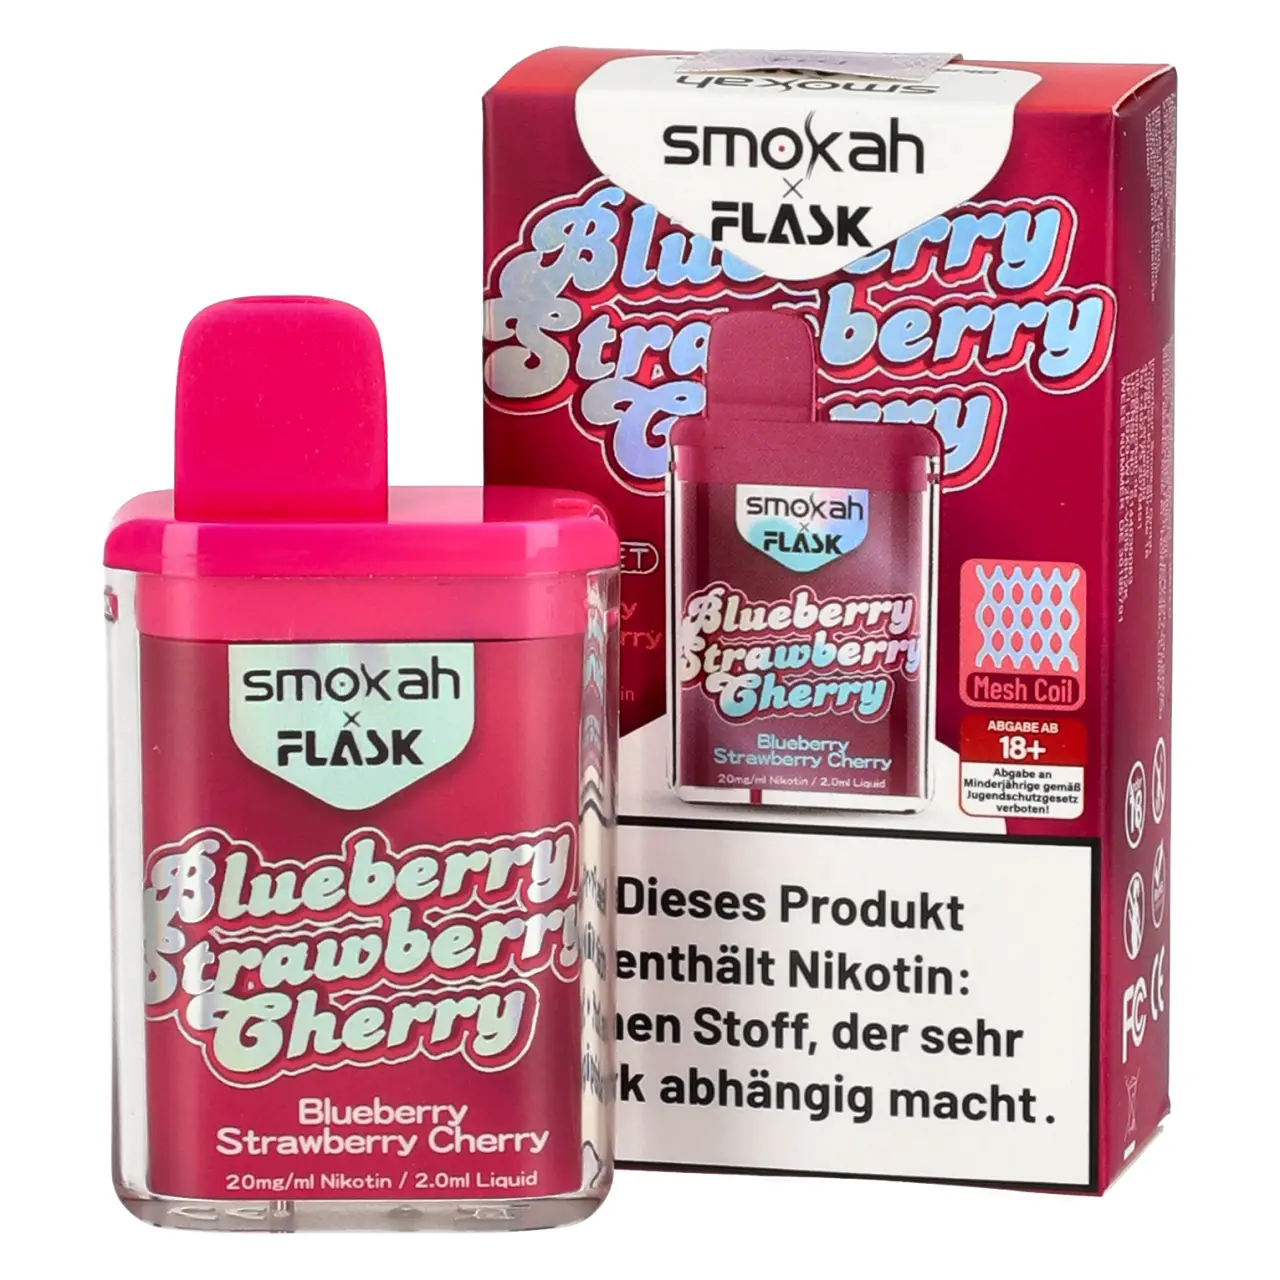 Blueberry Strawberry Cherry - Smokah x Flask Pocket Einweg Vape